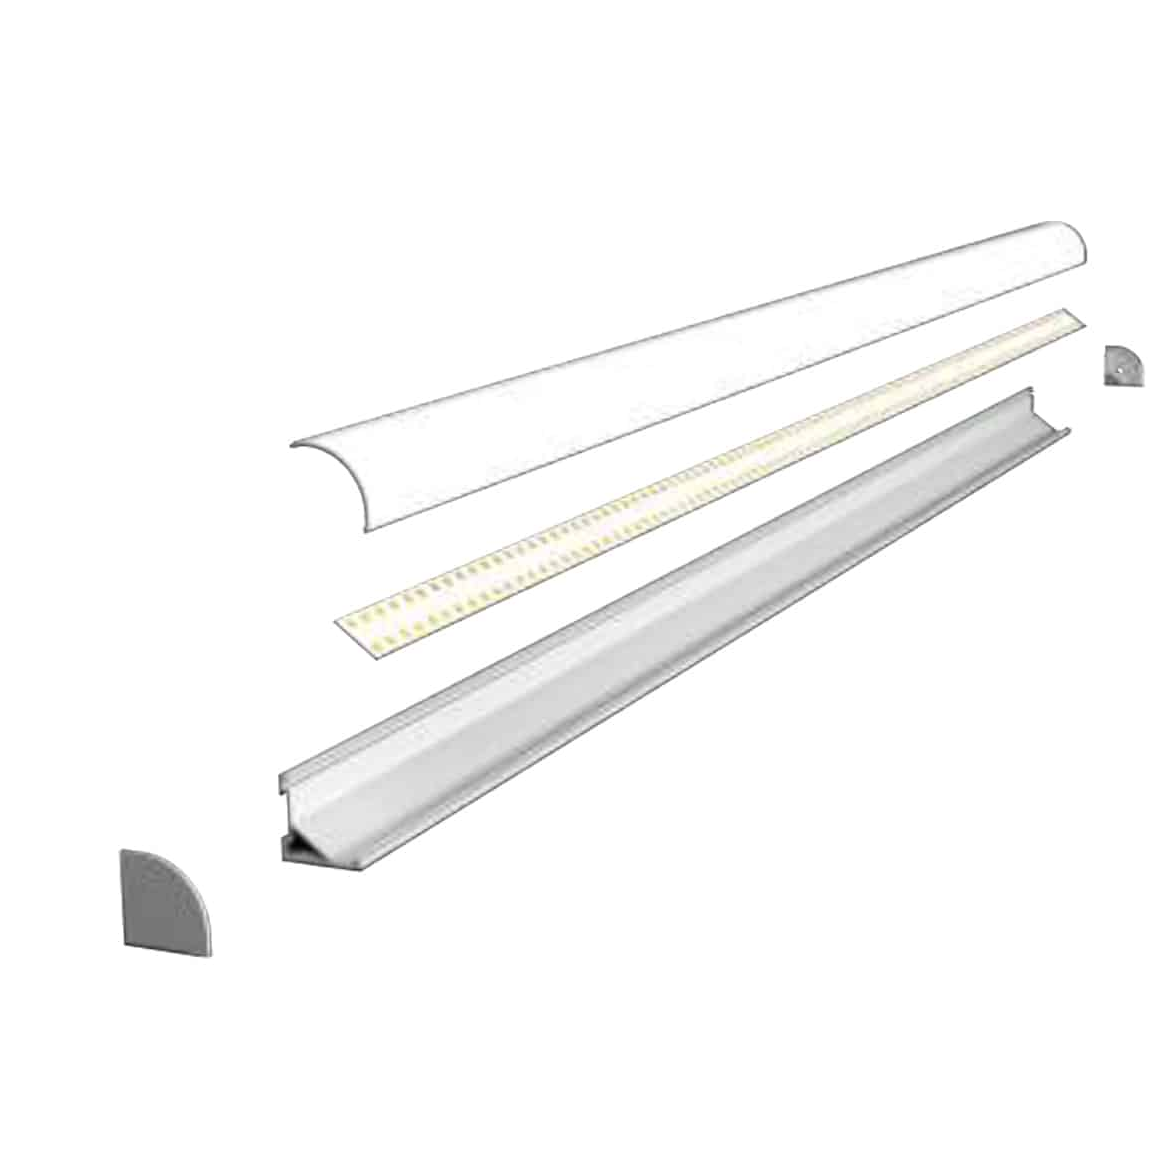 Extrusion aluminium profile for LED light (11)2ye